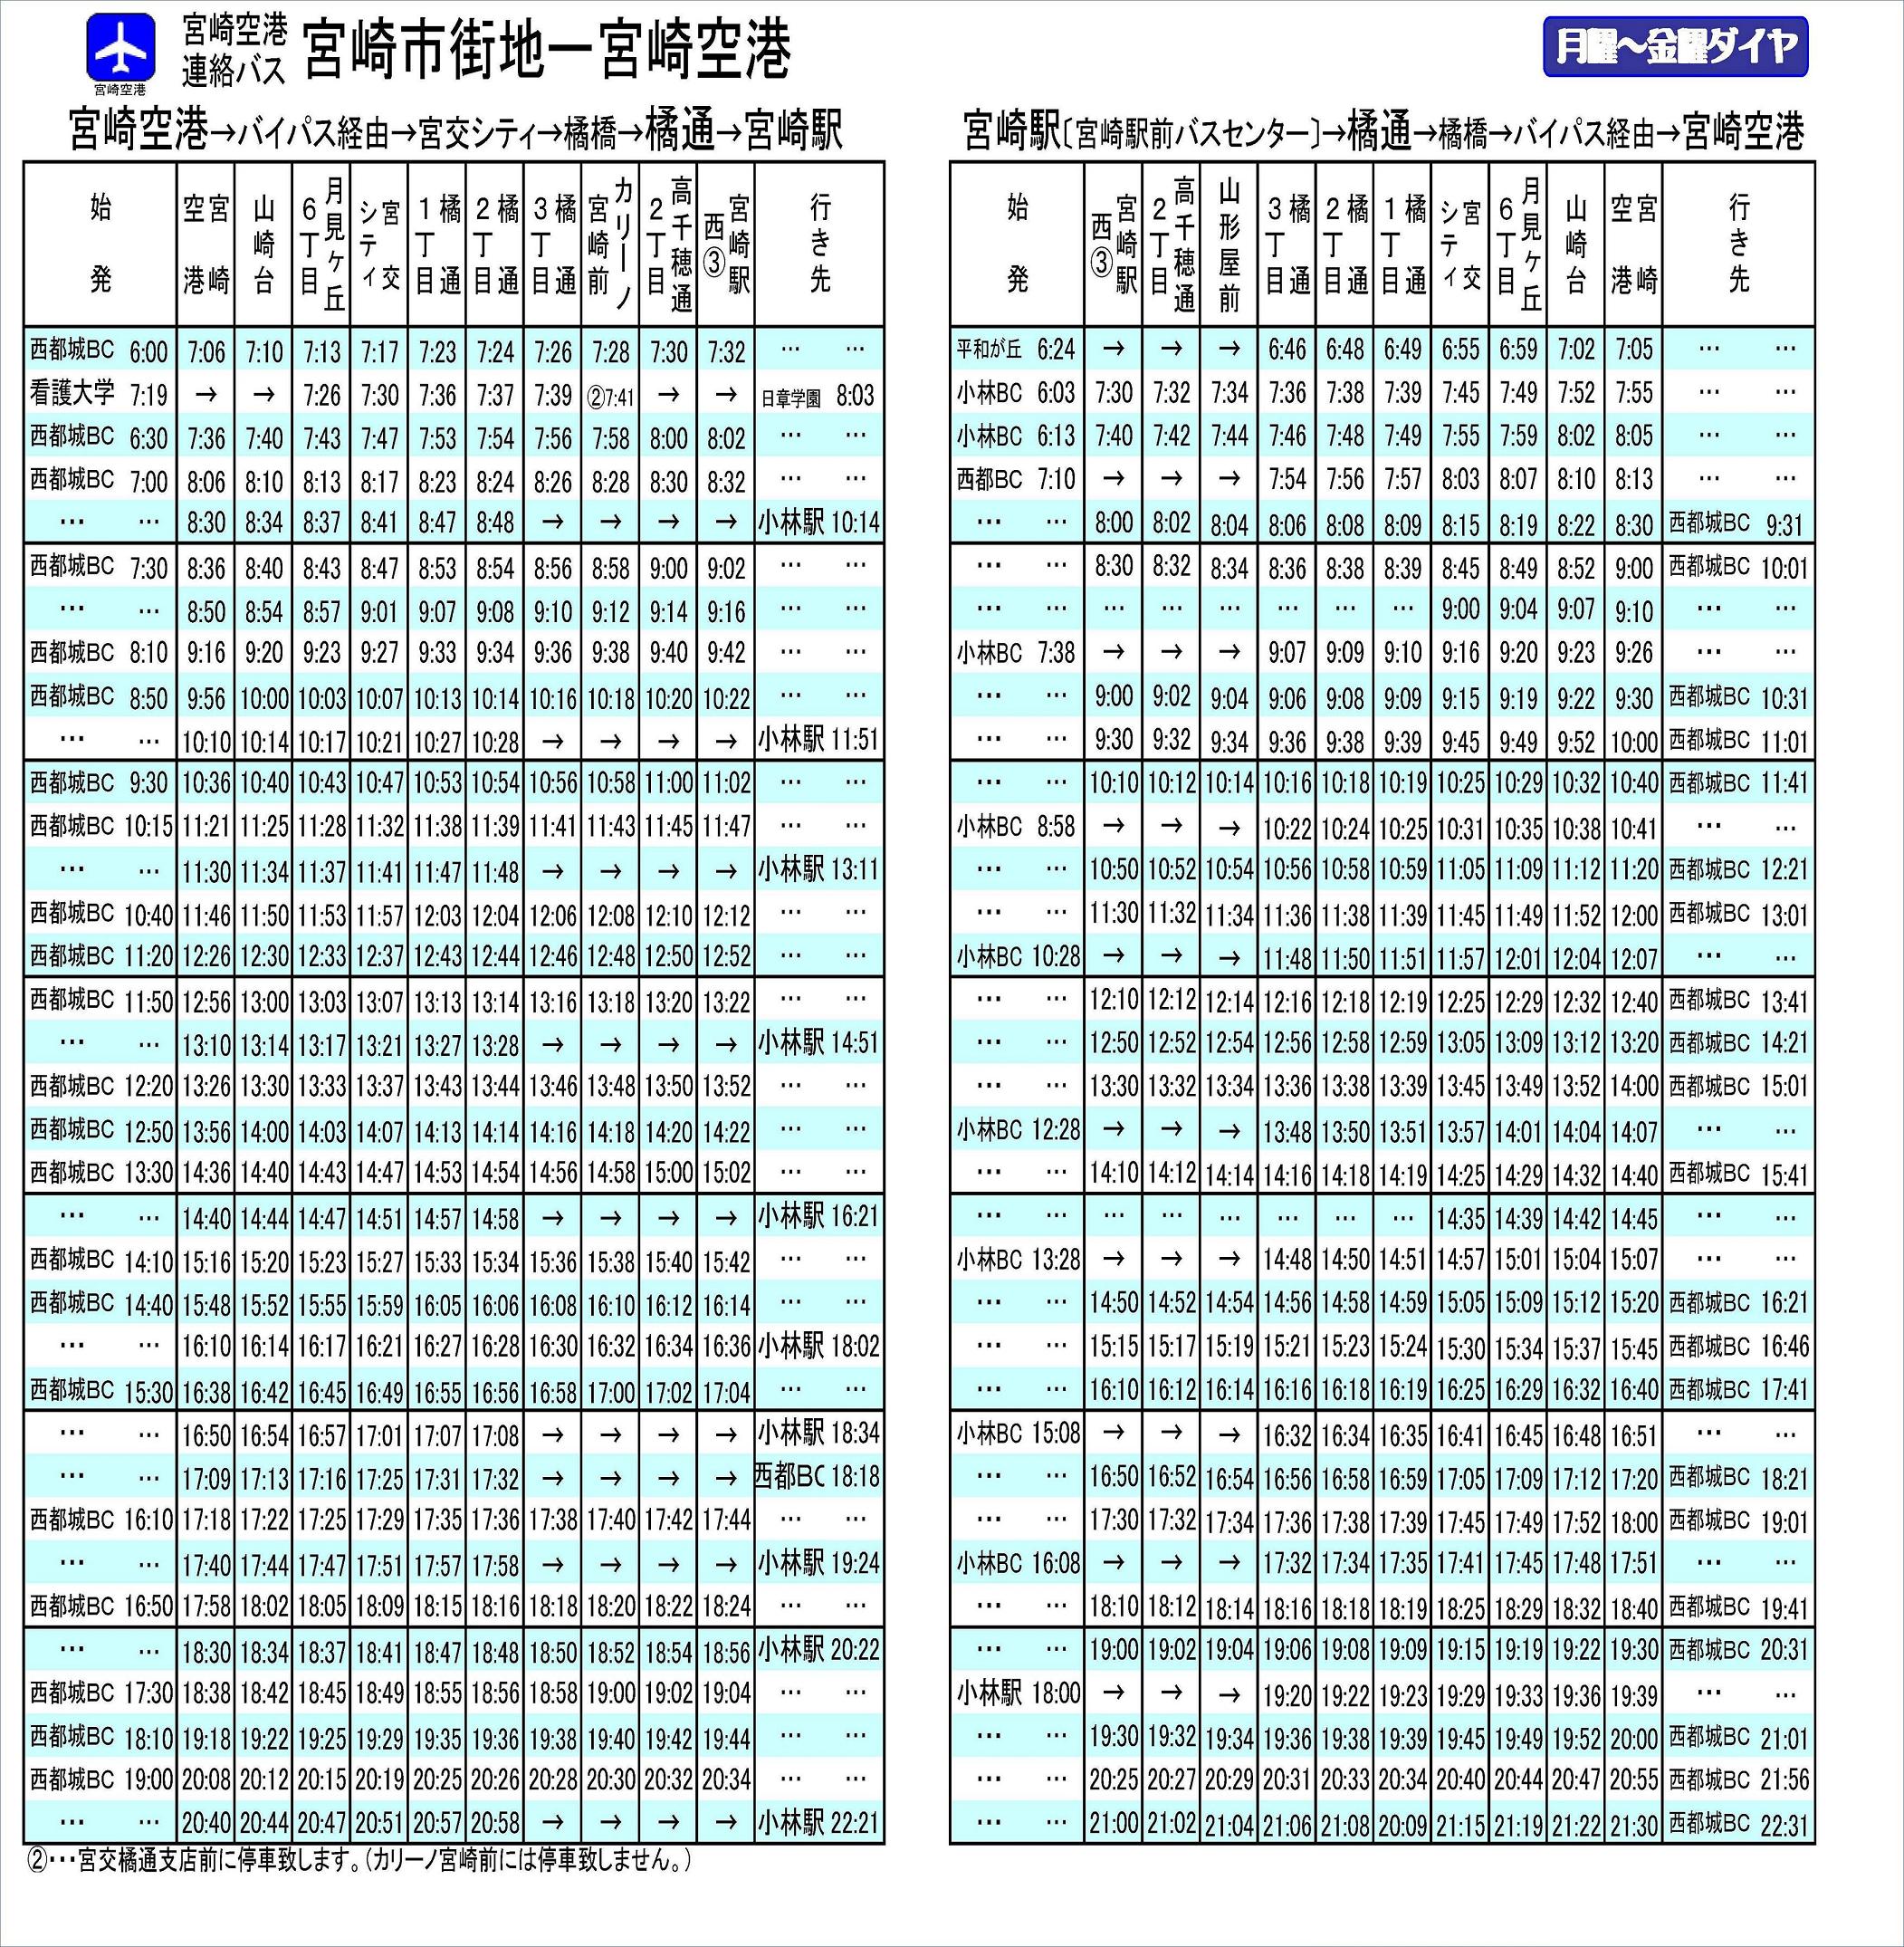 机场与JR宫崎站的巴士信息